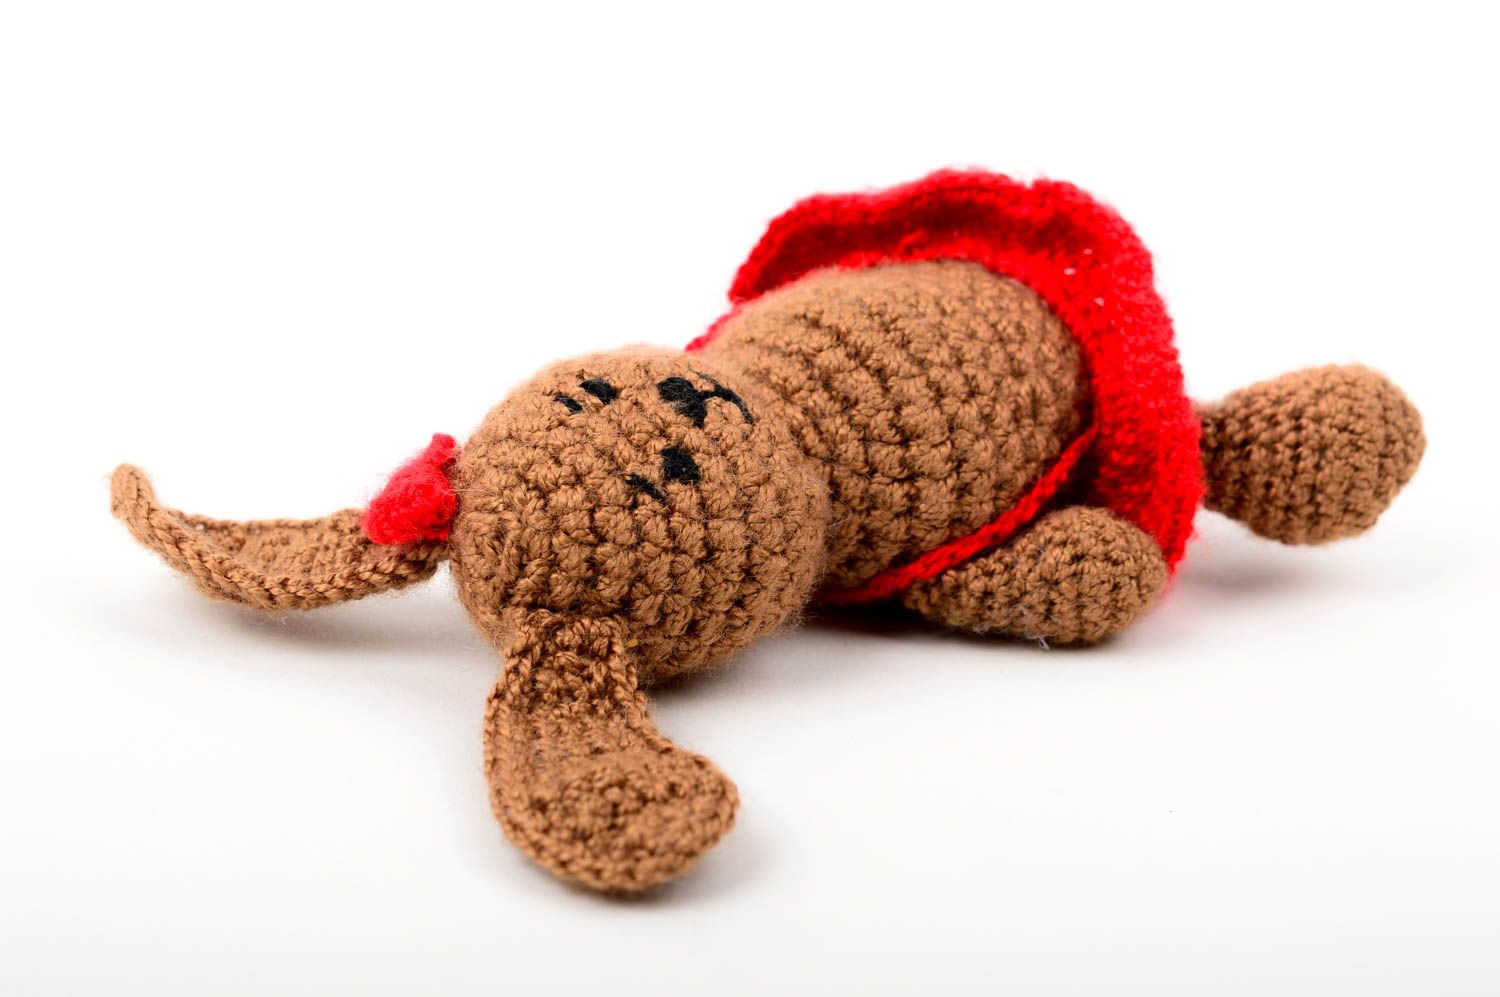 Мягкая игрушка хэнд мейд игрушка заяц в красной юбке милая детская игрушка фото 3